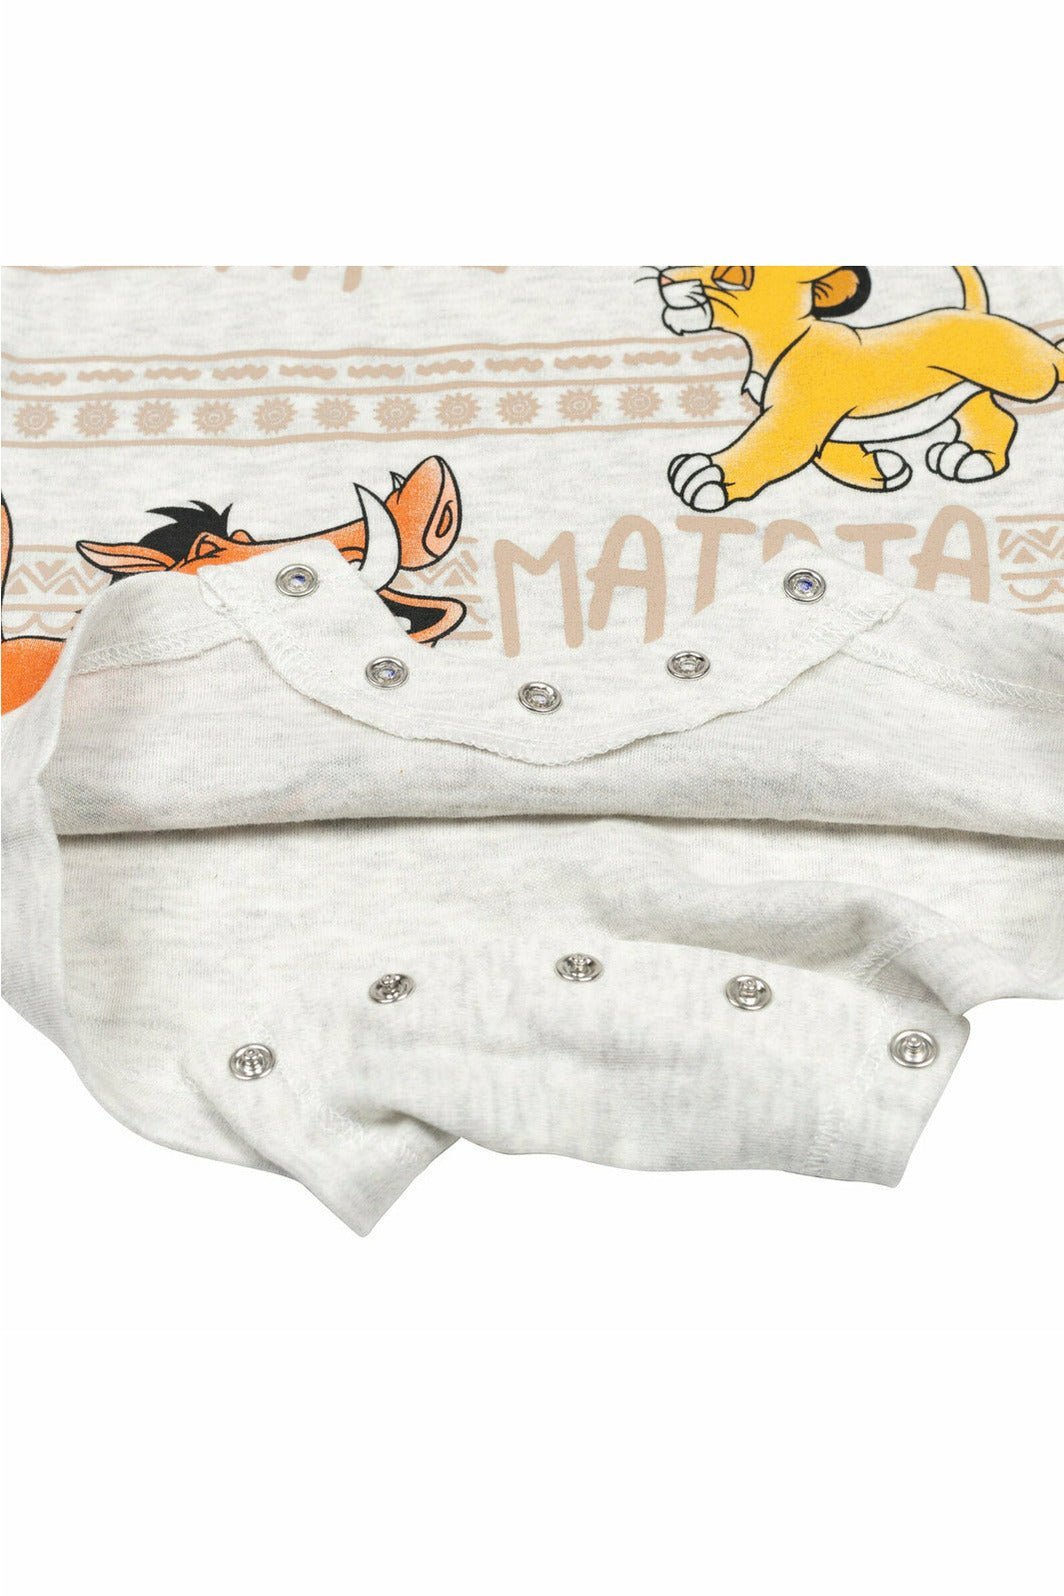 Lion King Short Sleeve Romper & Sunhat - imagikids